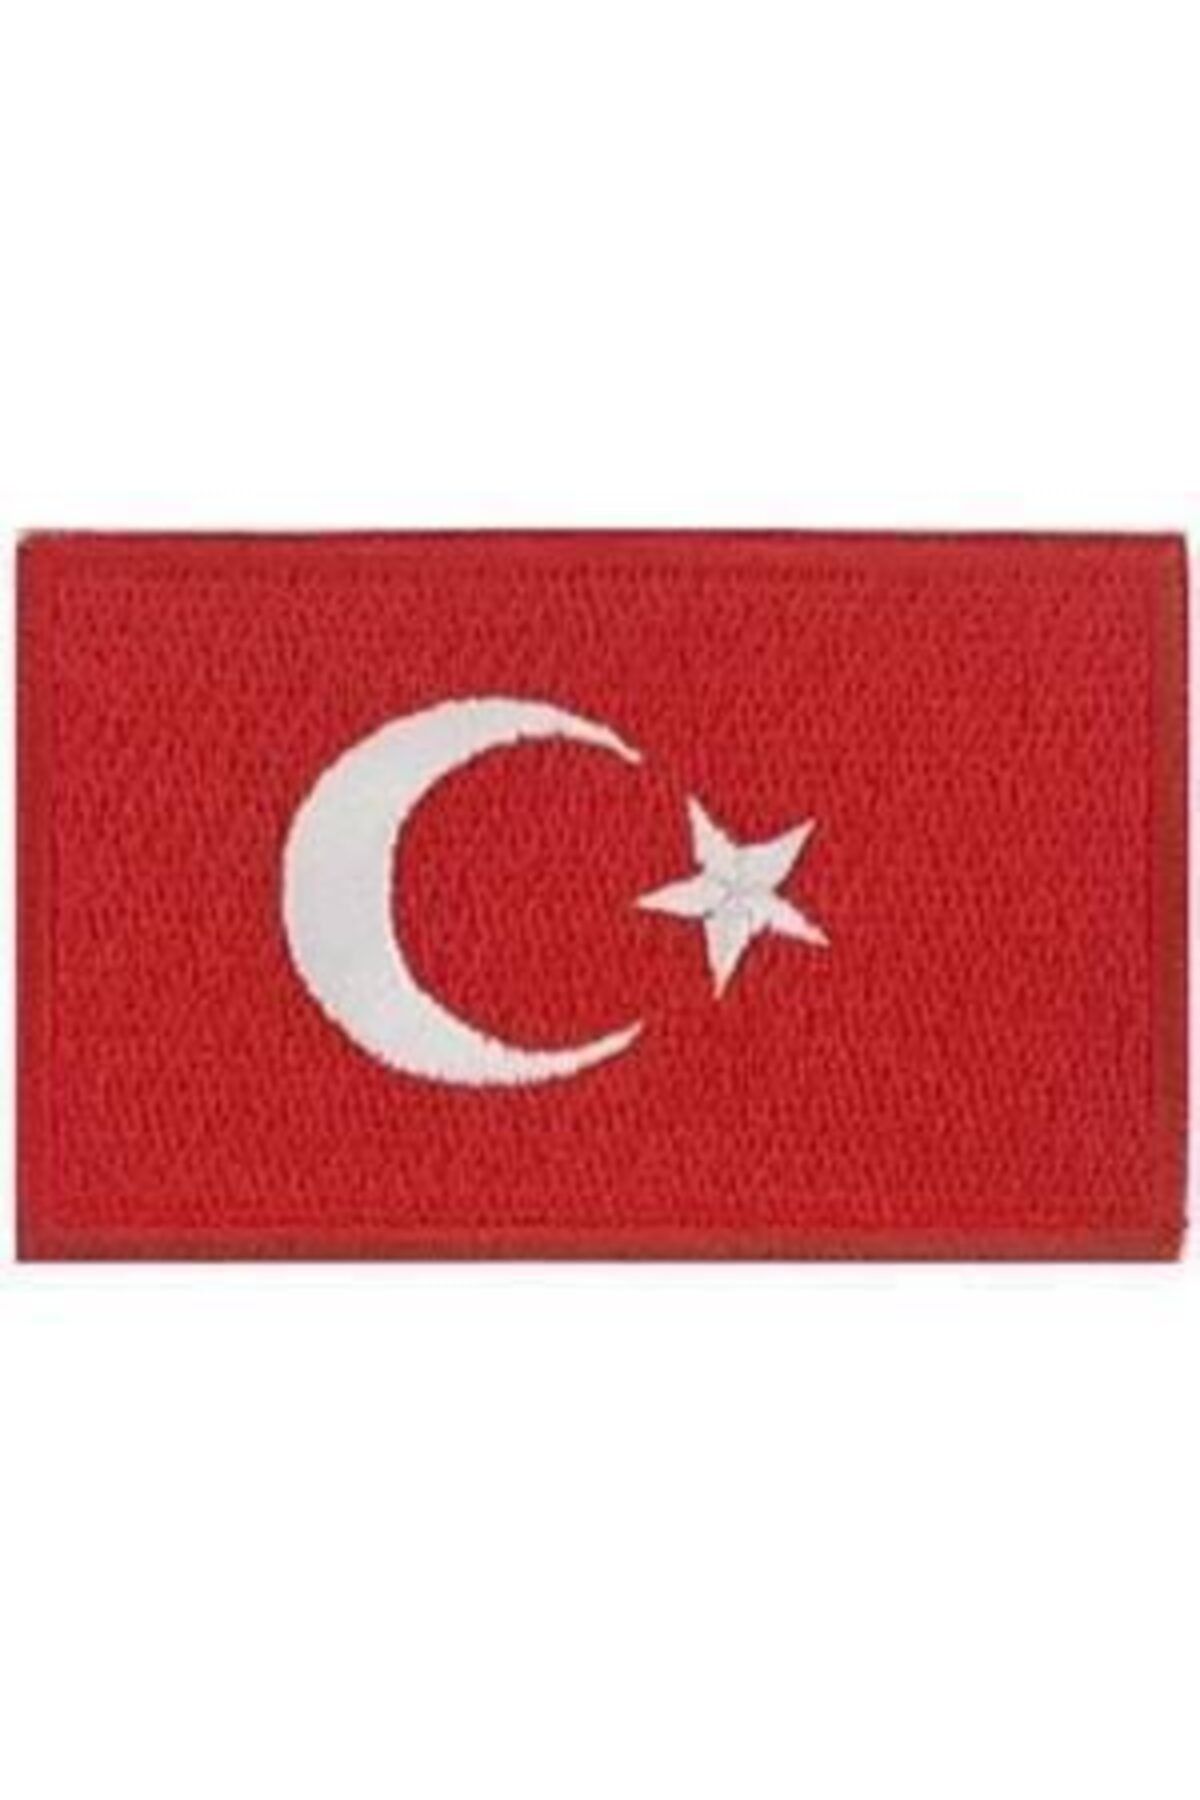 Sim Nakış Cırt Bantlı Turkey Türkiye Türk Bayrakları Nakış Işleme Arma Patch Peç 5x8 Cm